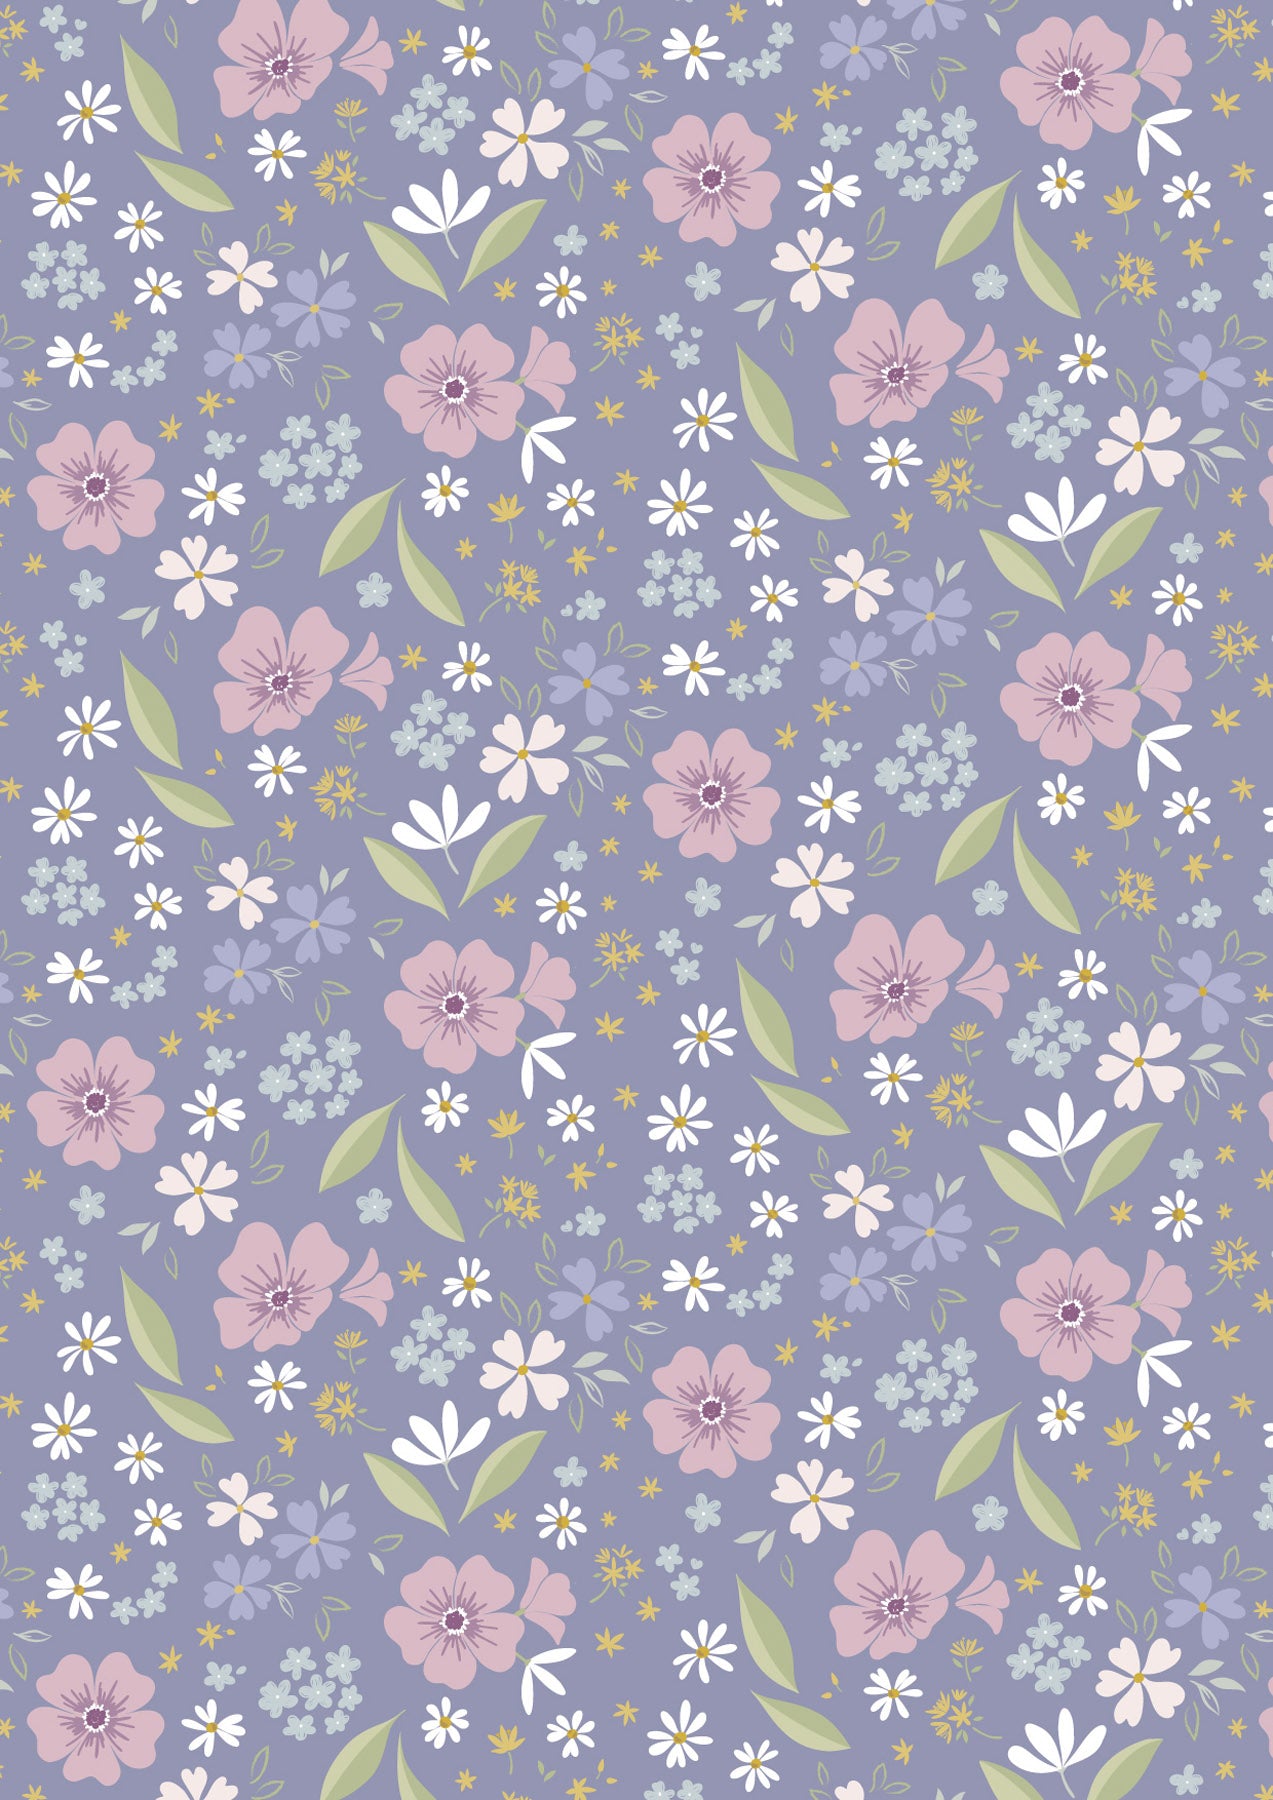 Floral Art on Lavender Blue - Floral Song